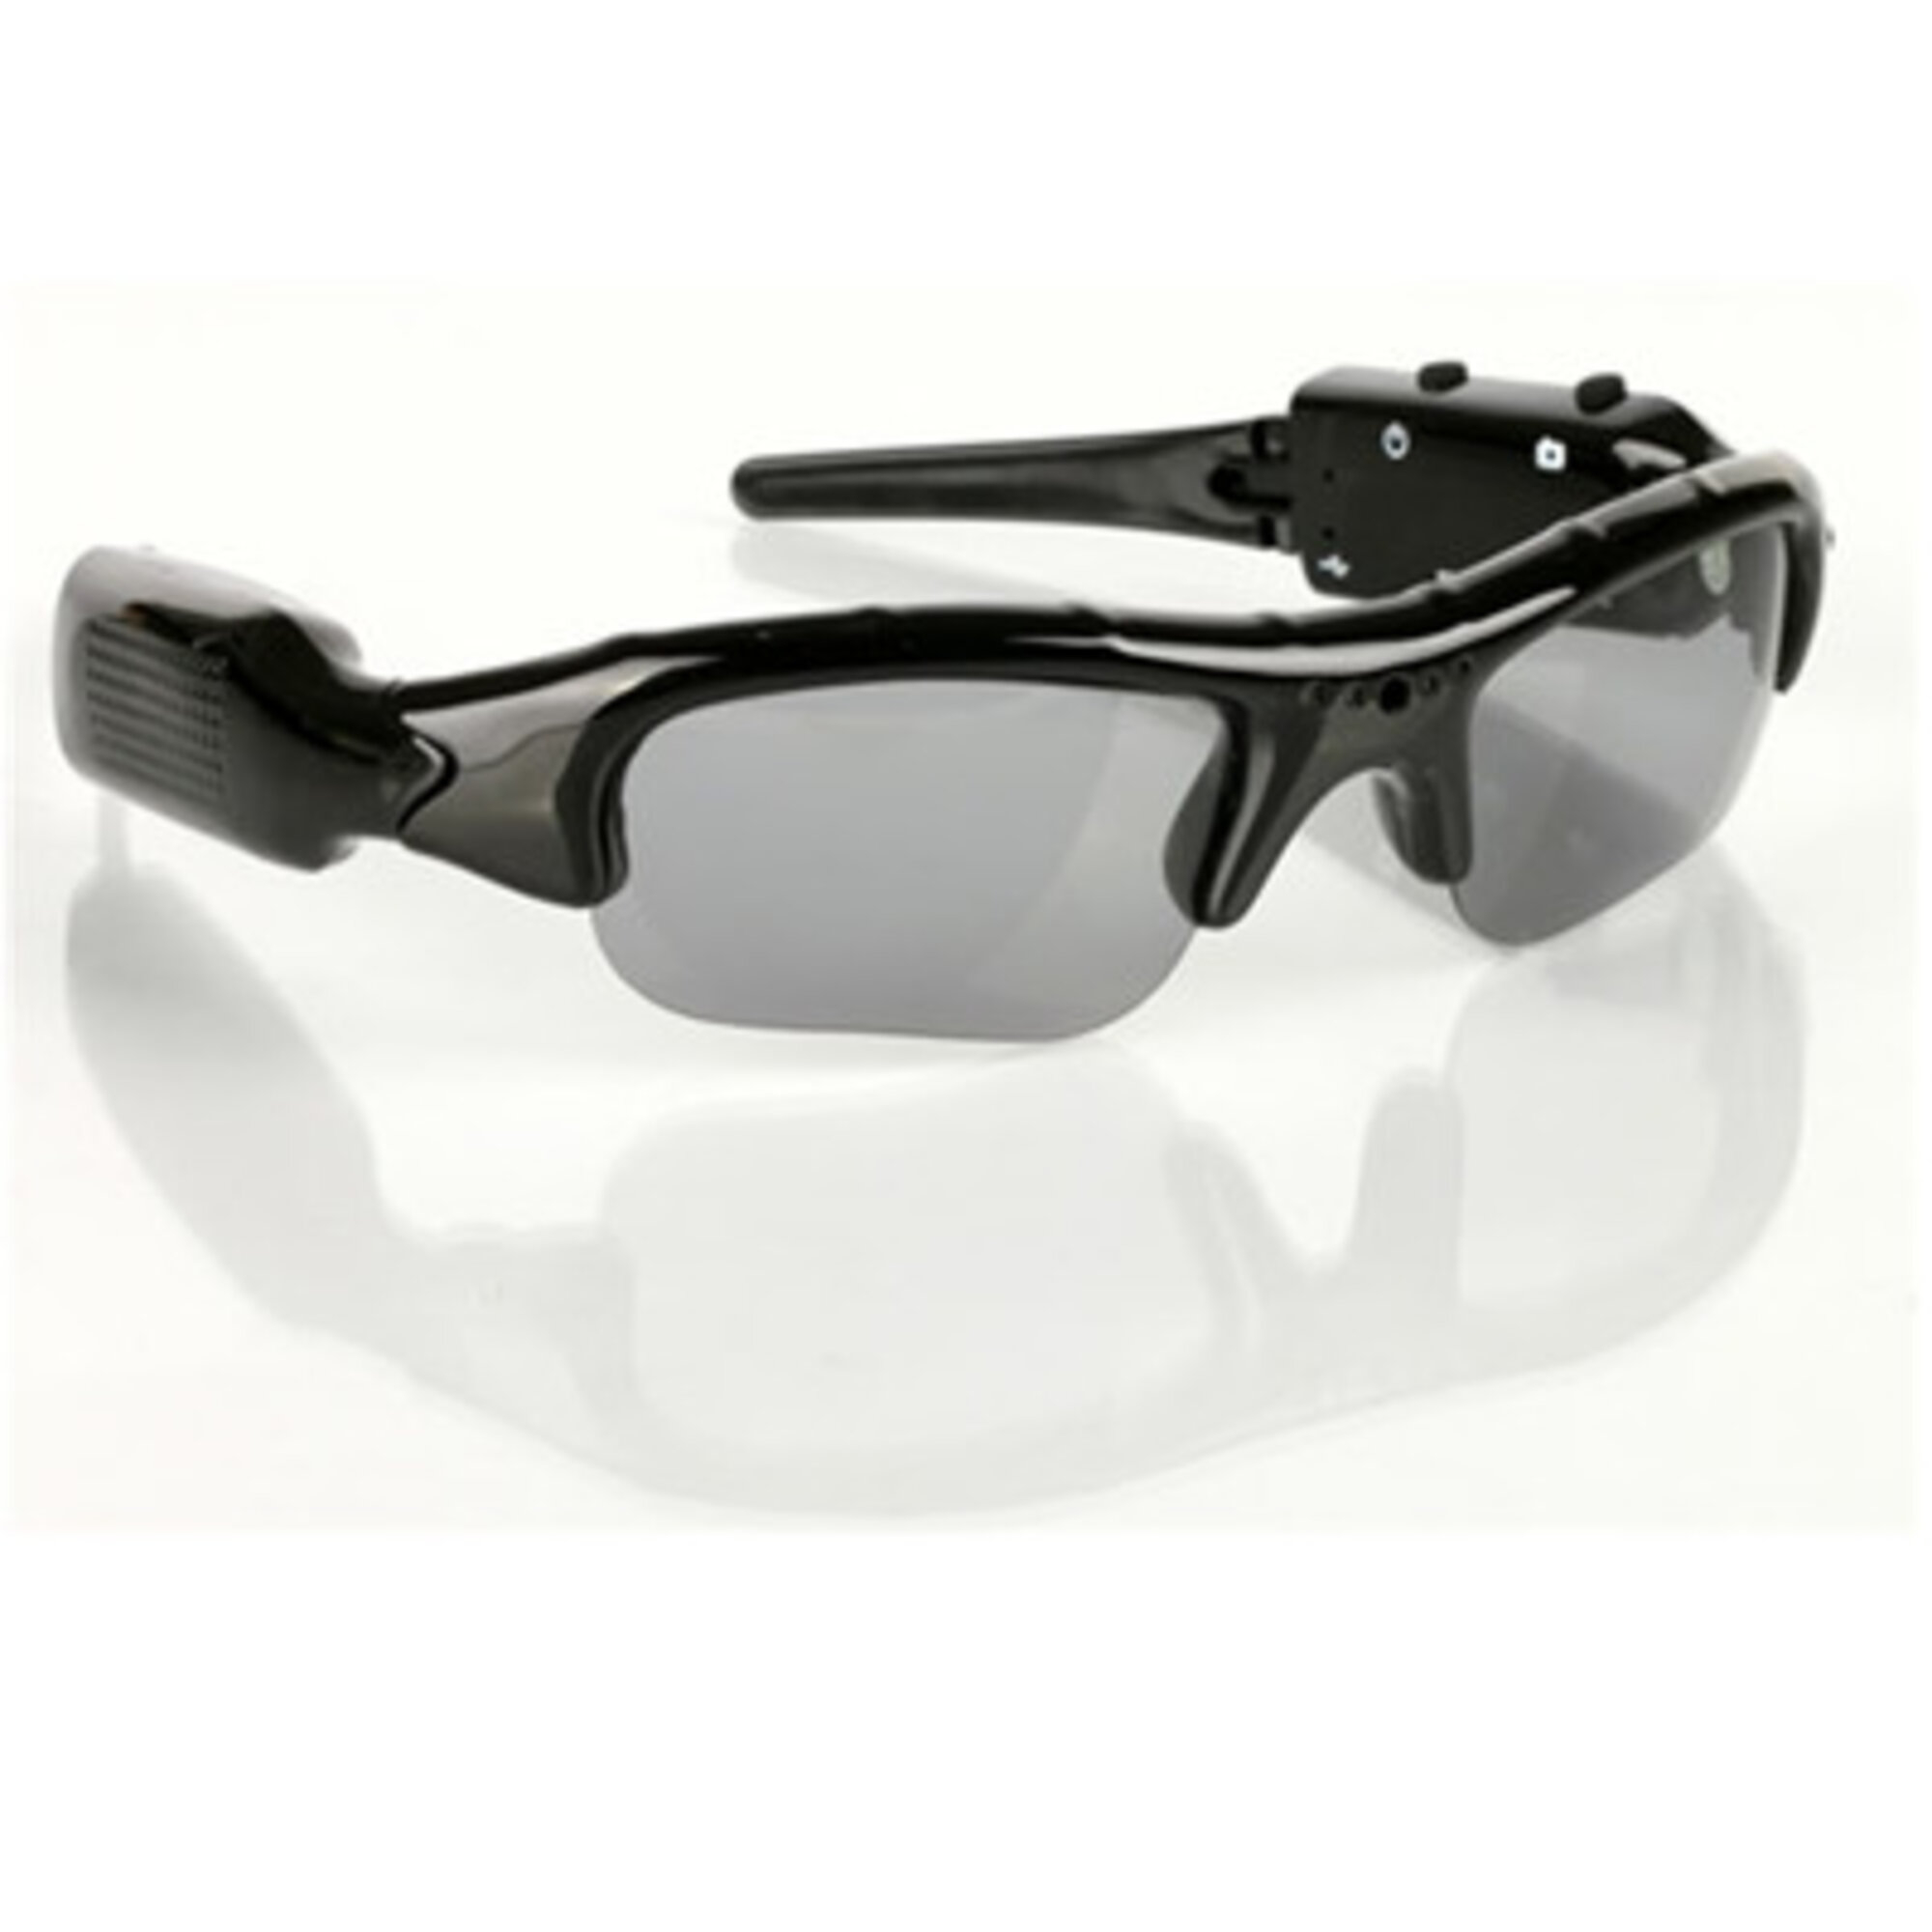 Skære af verden Indvending Køb T-Care M008 Spionkamera, model solbriller hos Alabazar - 249,00 kr.